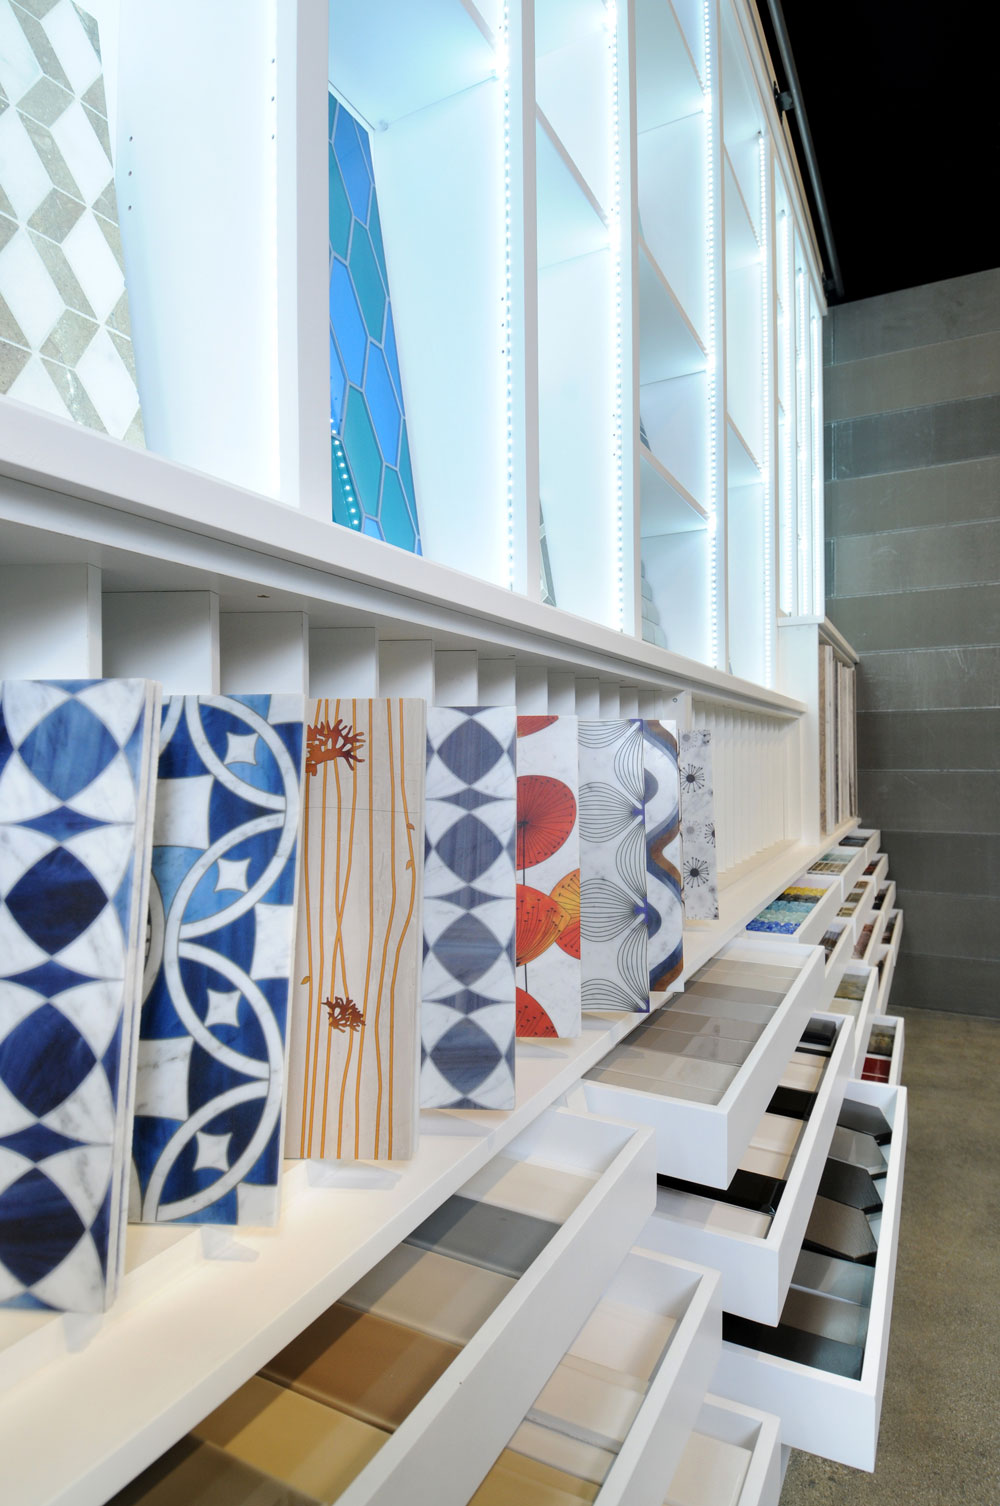 7-Waterford-Saxum-tile-display-shelves.jpg